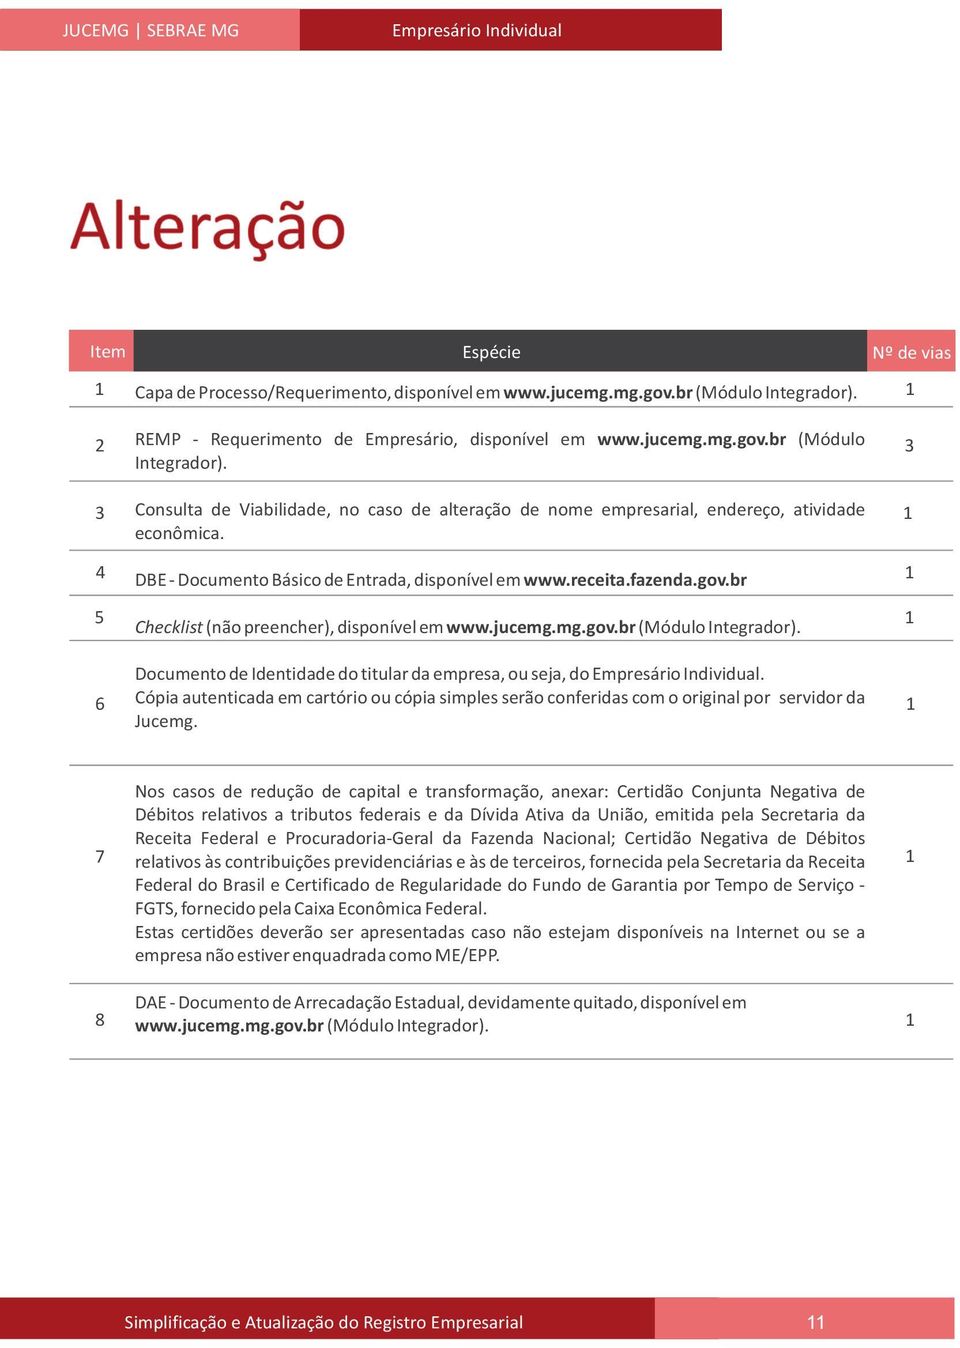 4 DBE - Documento Básico de Entrada, disponível em www.receita.fazenda.gov.br 5 Checklist (não preencher), disponível em www.jucemg.mg.gov.br (Módulo Integrador).